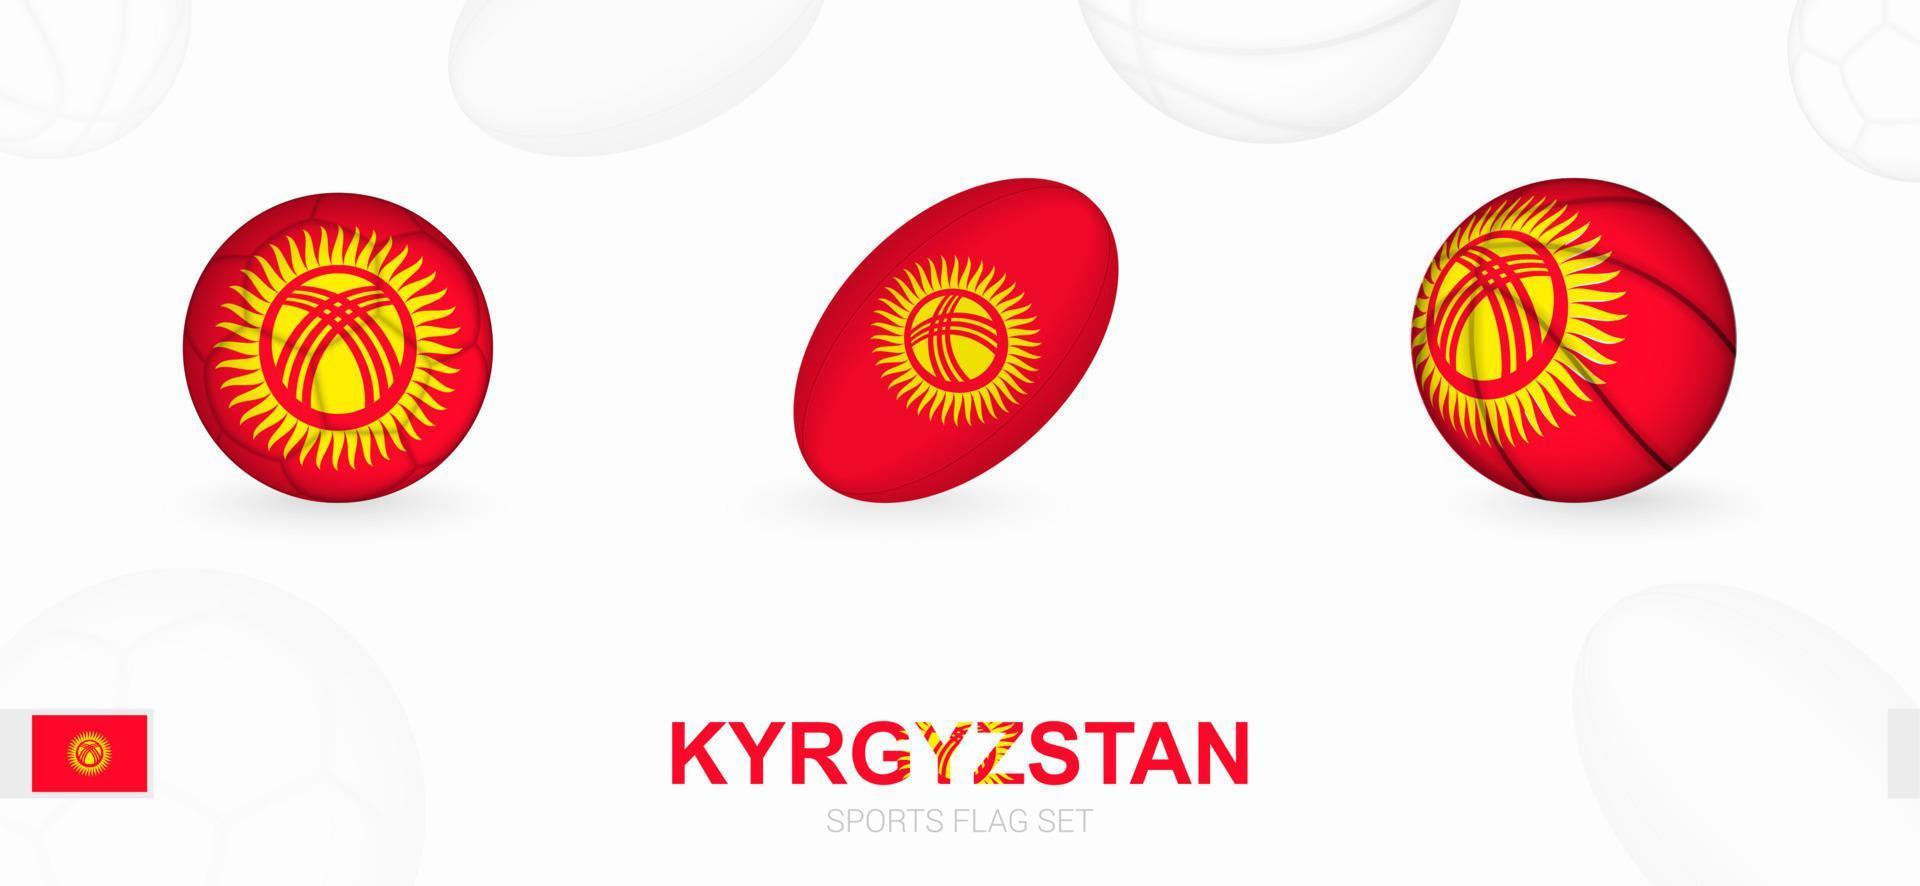 Deportes íconos para fútbol, rugby y baloncesto con el bandera de Kirguistán. vector